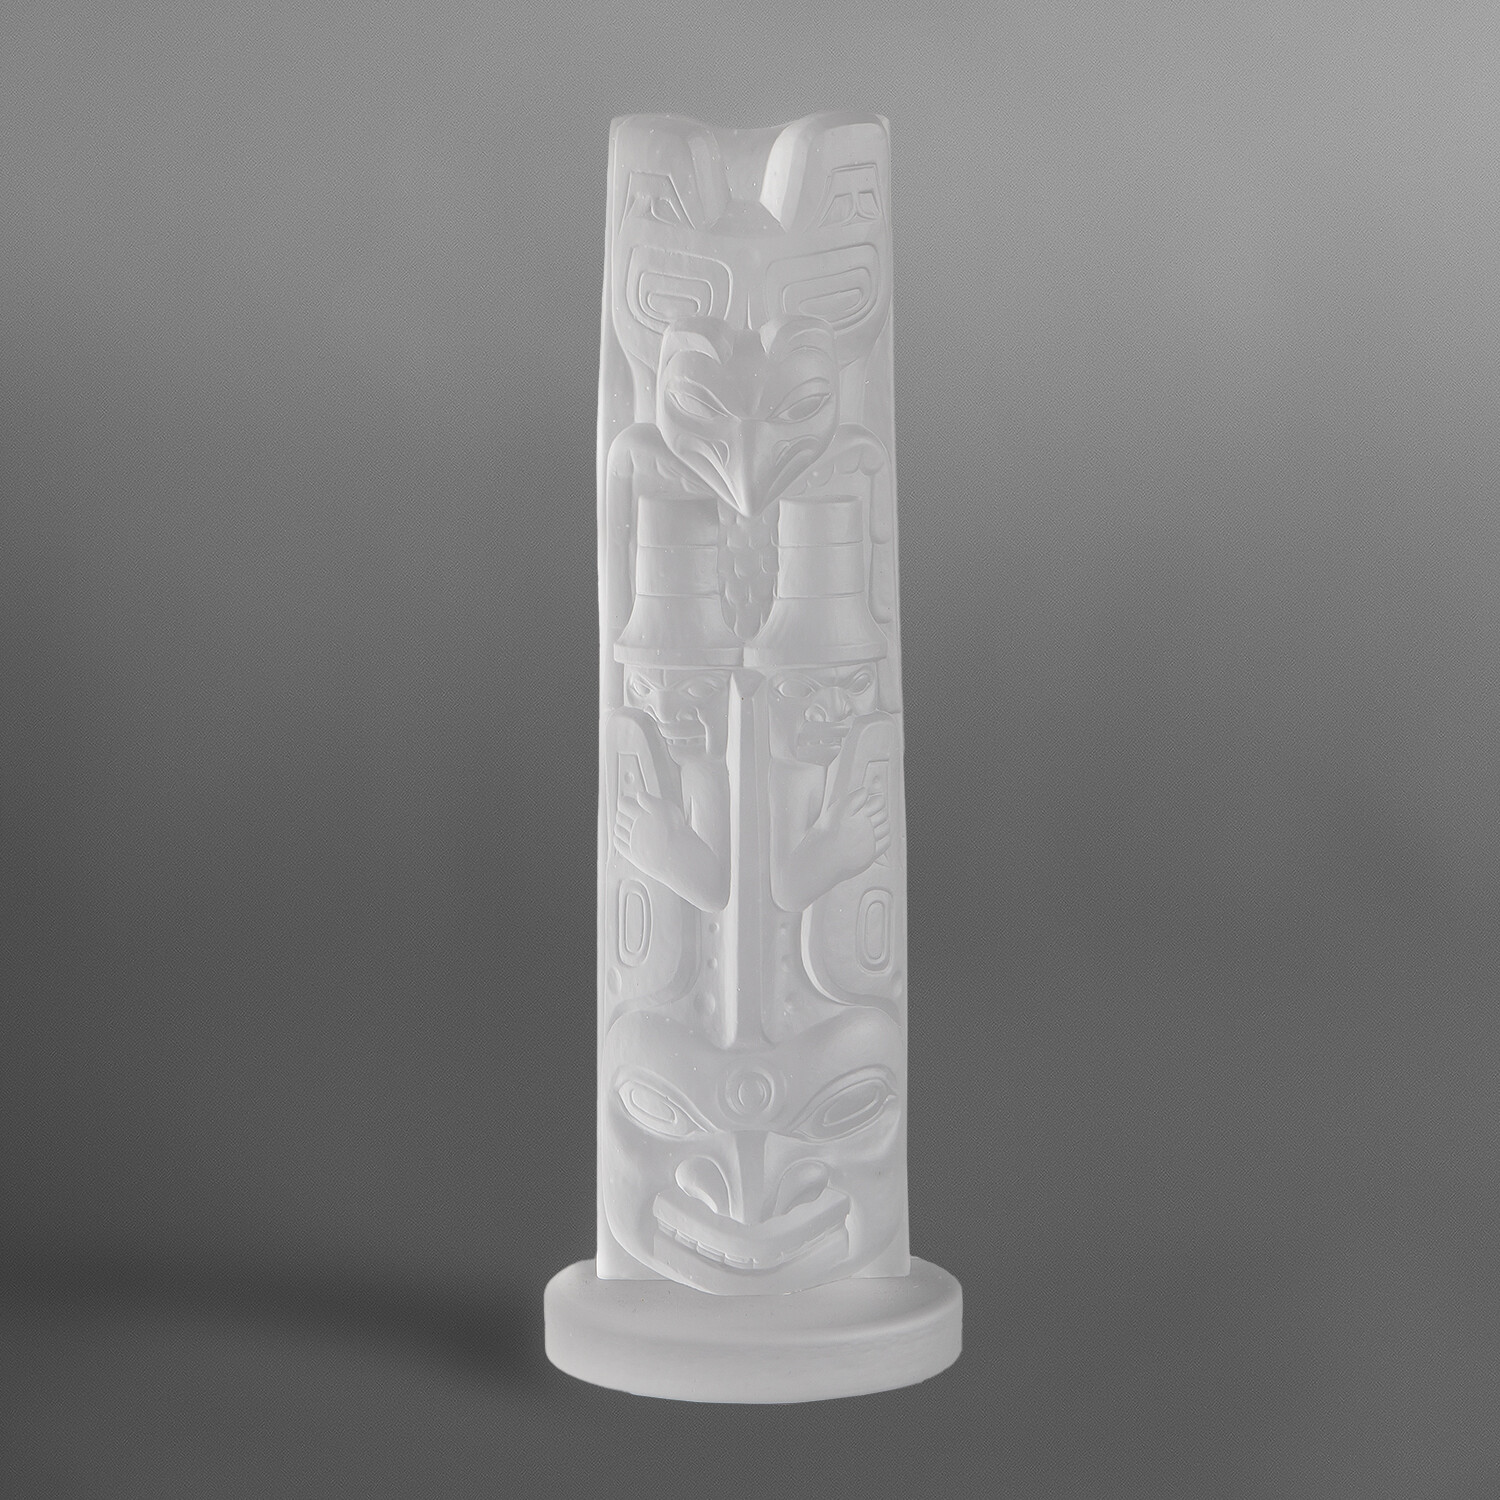 Killerwhale Totem Pole
BY PRESTON SINGLETARY
TLINGIT NATION
CAST GLASS
18” X 5” X 5½”
$4000